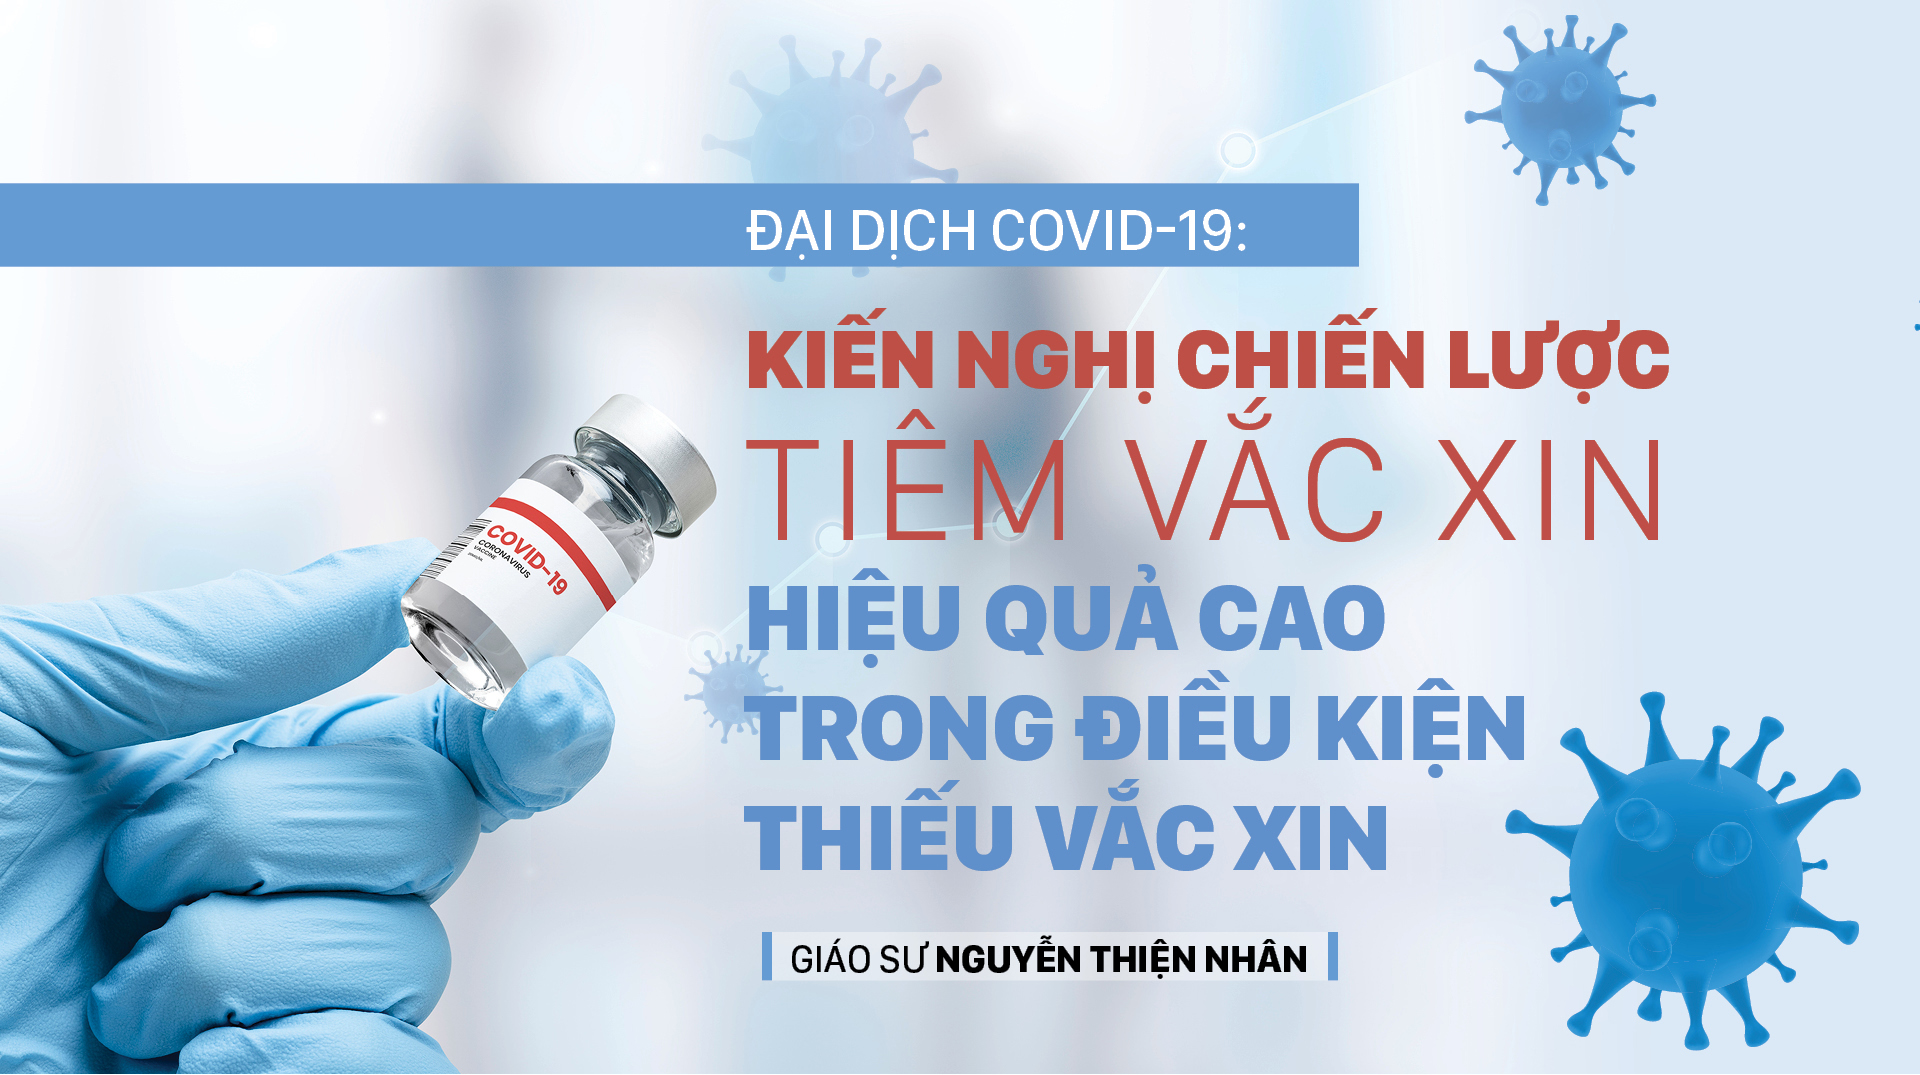 Đại dịch Covid-19: Kiến nghị chiến lược tiêm vắc xin hiệu quả cao trong điều kiện thiếu vắc xin